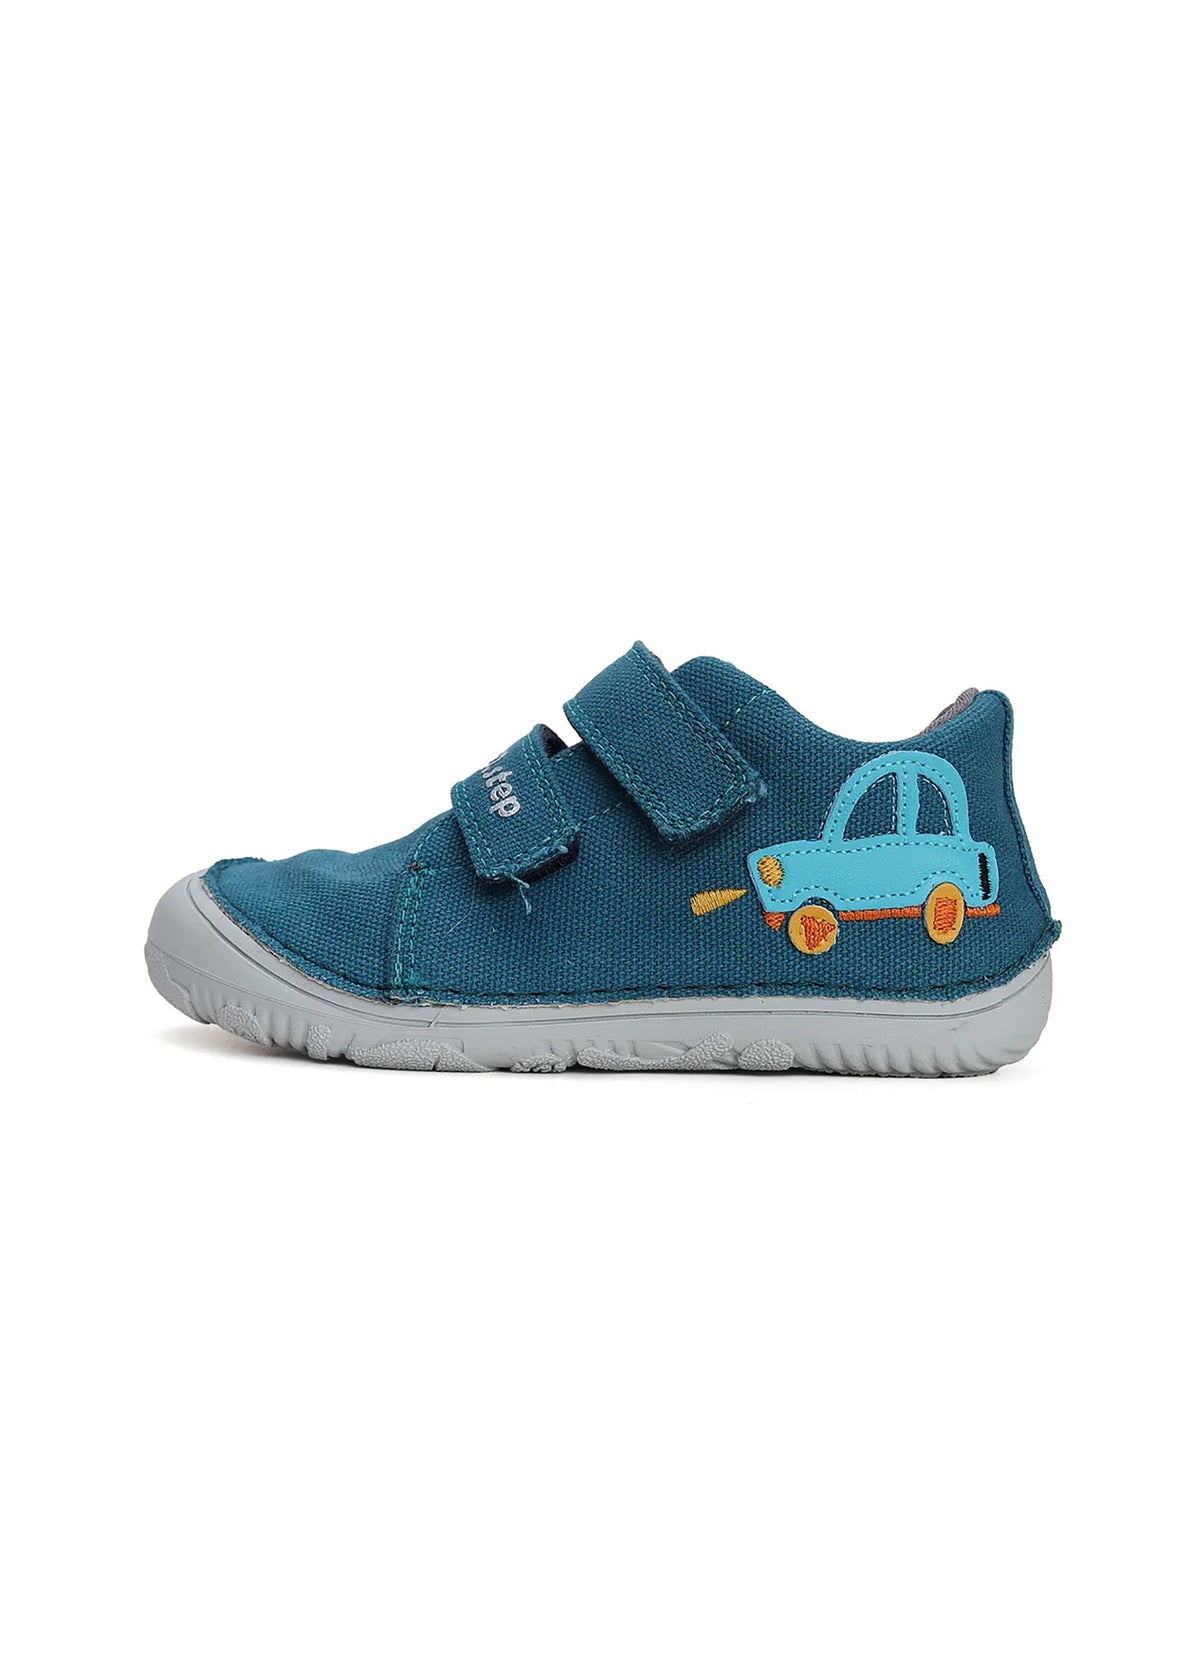 Lasten ensiaskelkengät - turkoosi canvaskangas, sininen auto